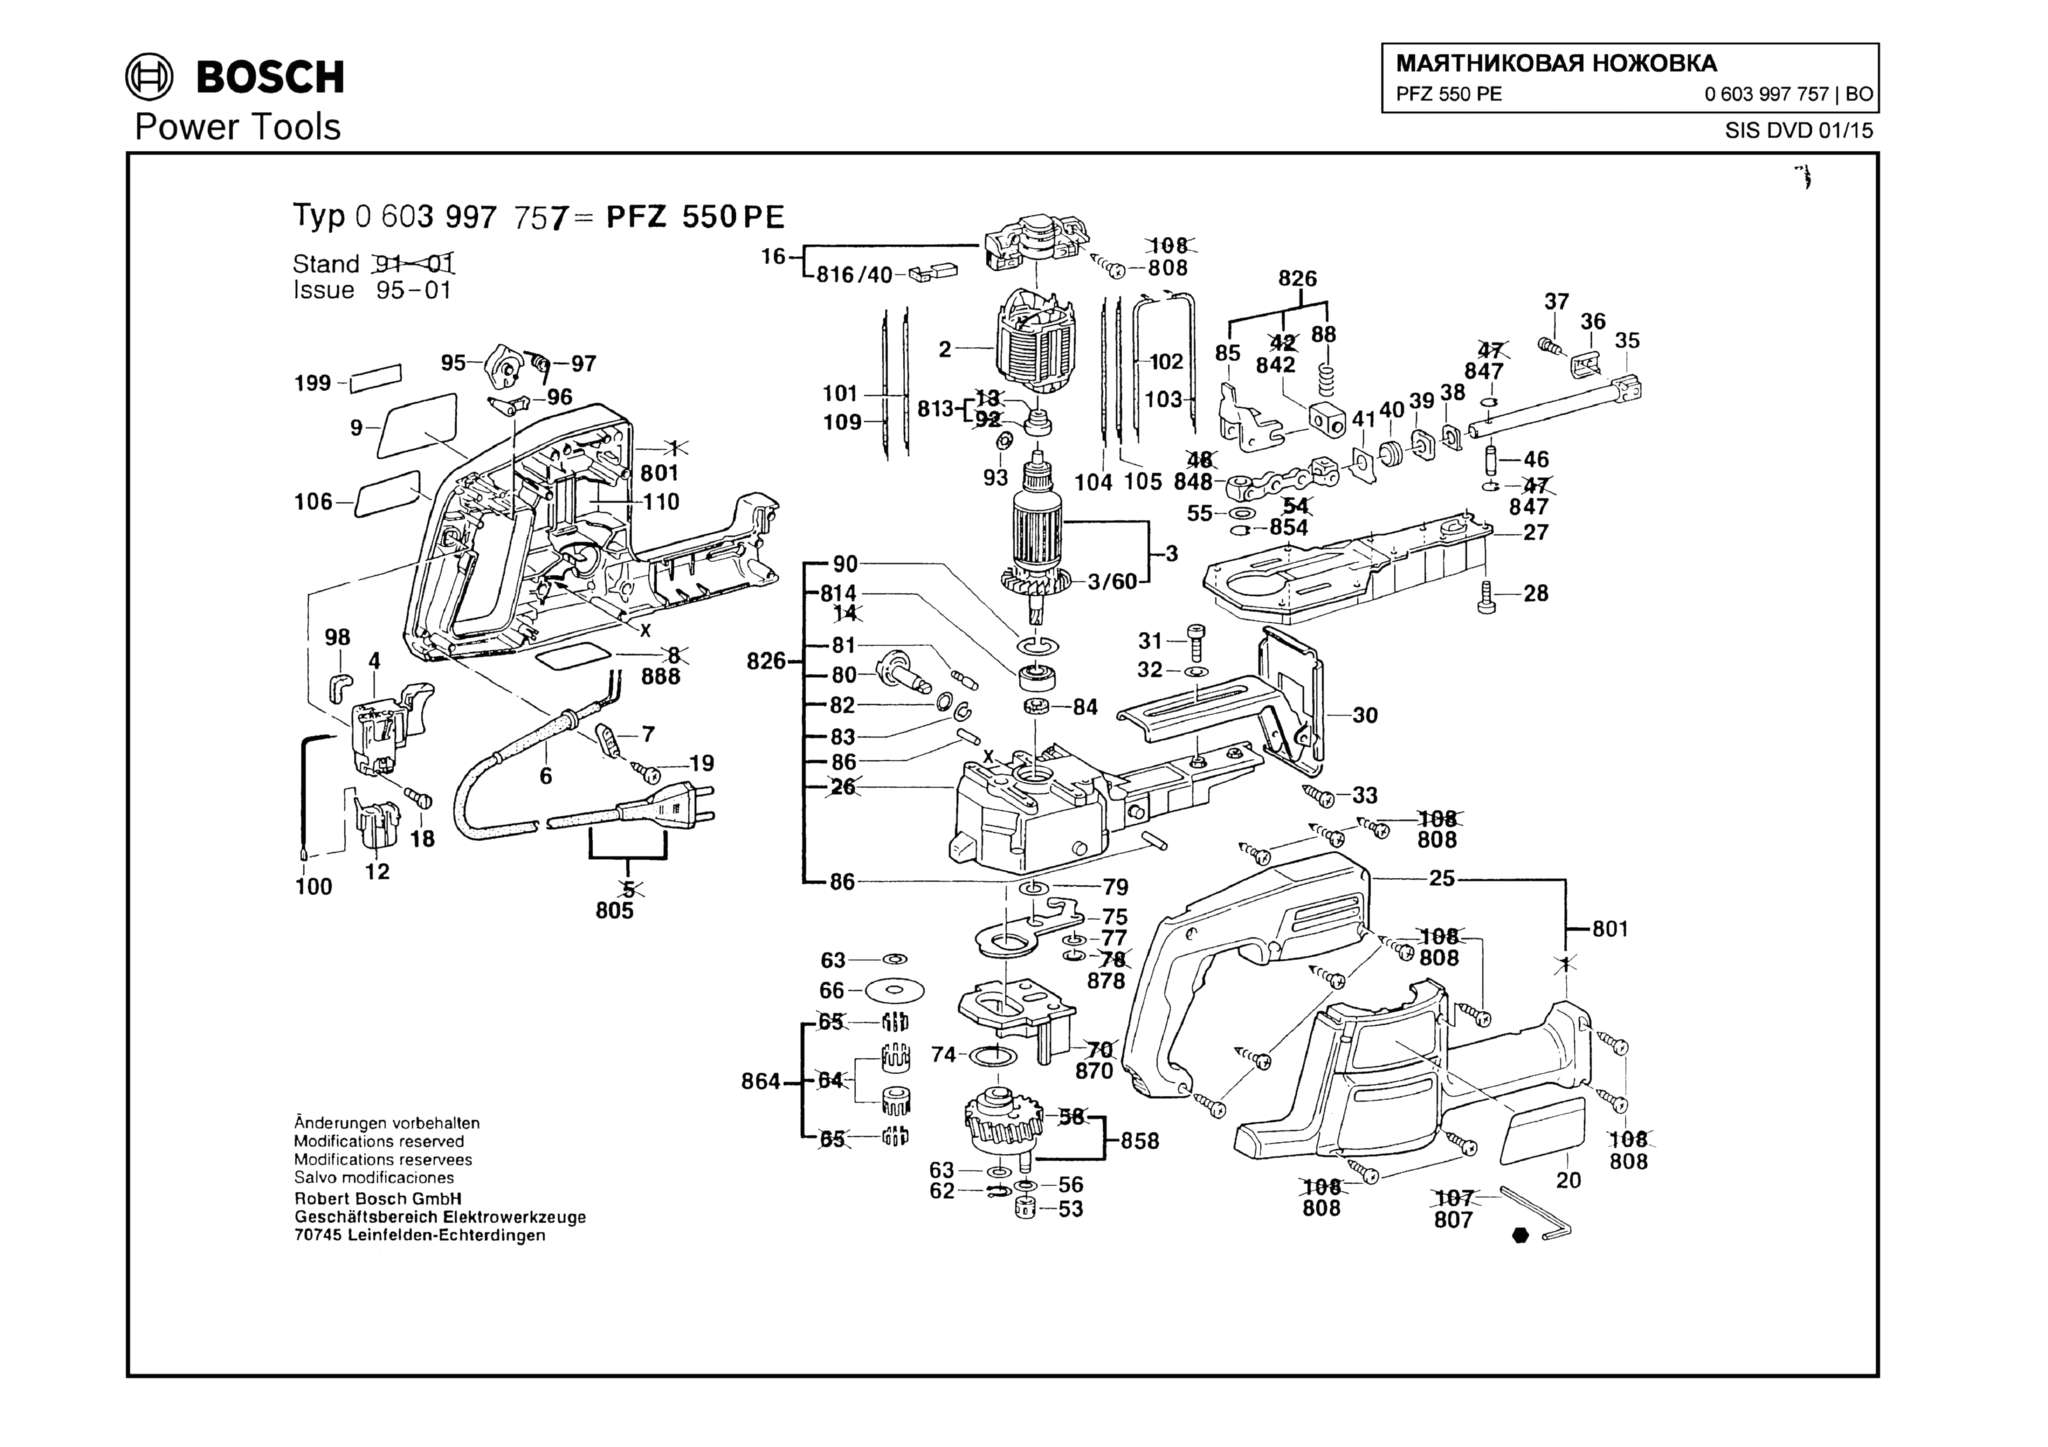 Запчасти, схема и деталировка Bosch PFZ 550 PE (ТИП 0603997757)